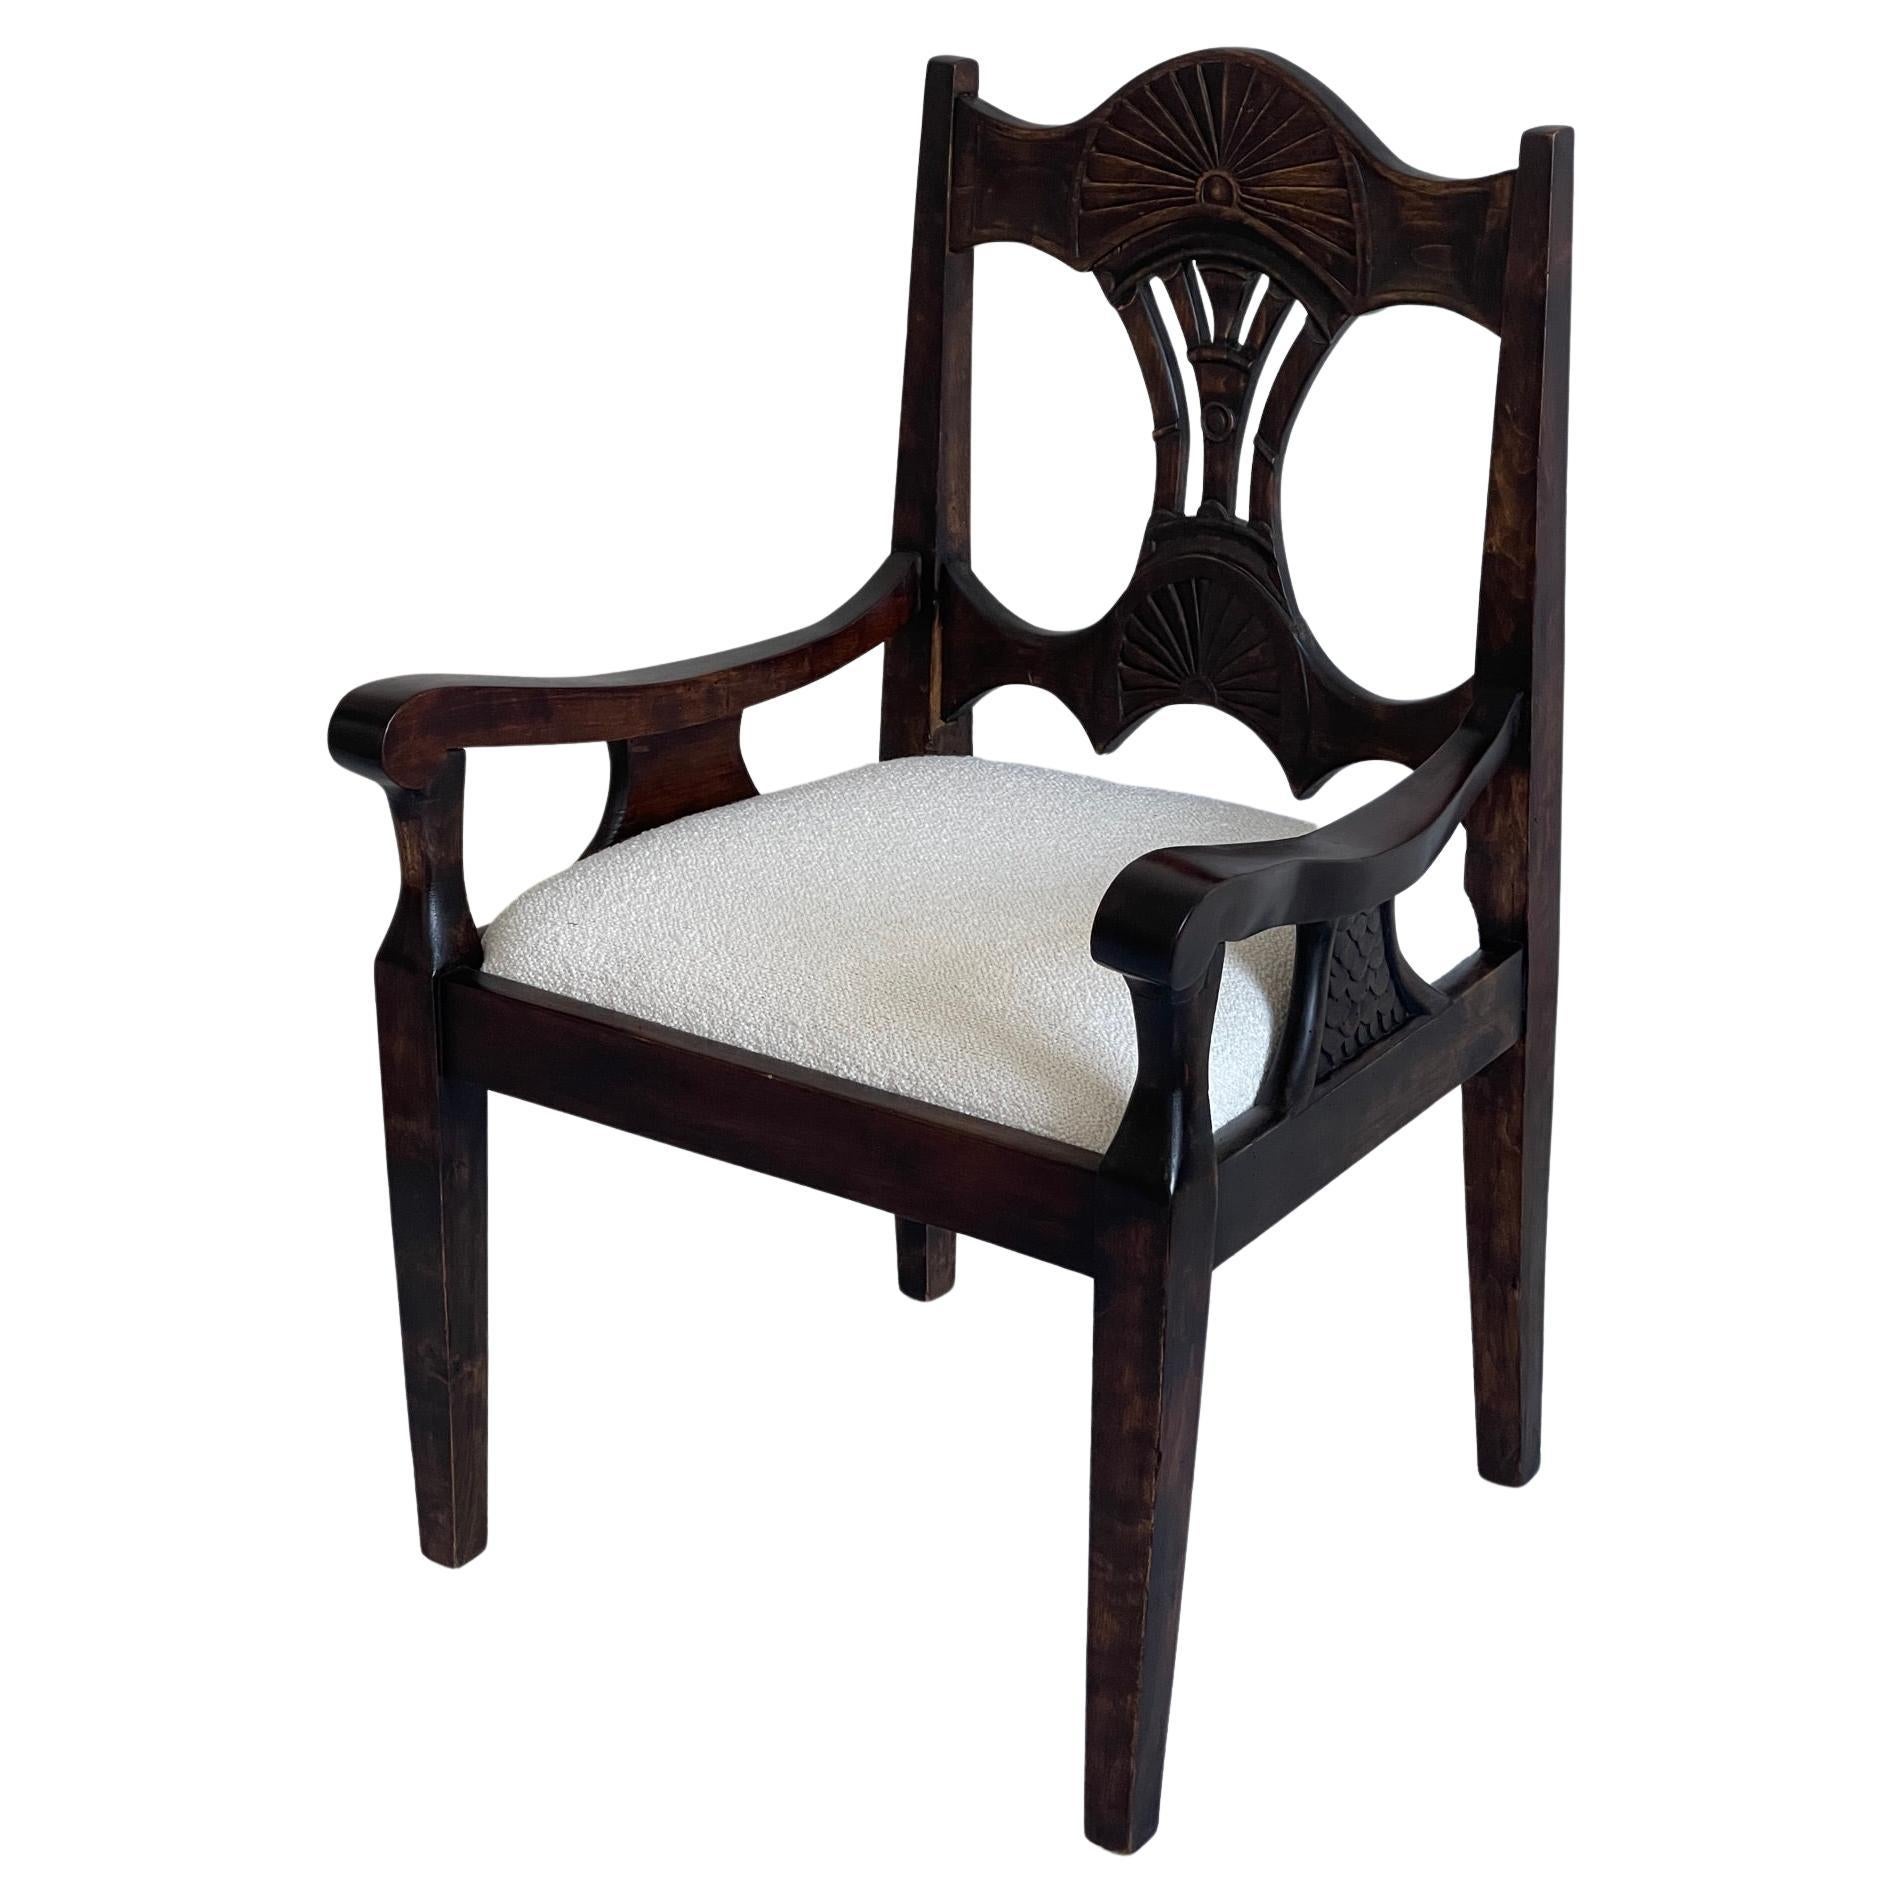 Skandinavischer Sessel aus der Mitte des 19. Jahrhunderts aus gebeizter Eiche, neu gepolstert mit Bouclé.